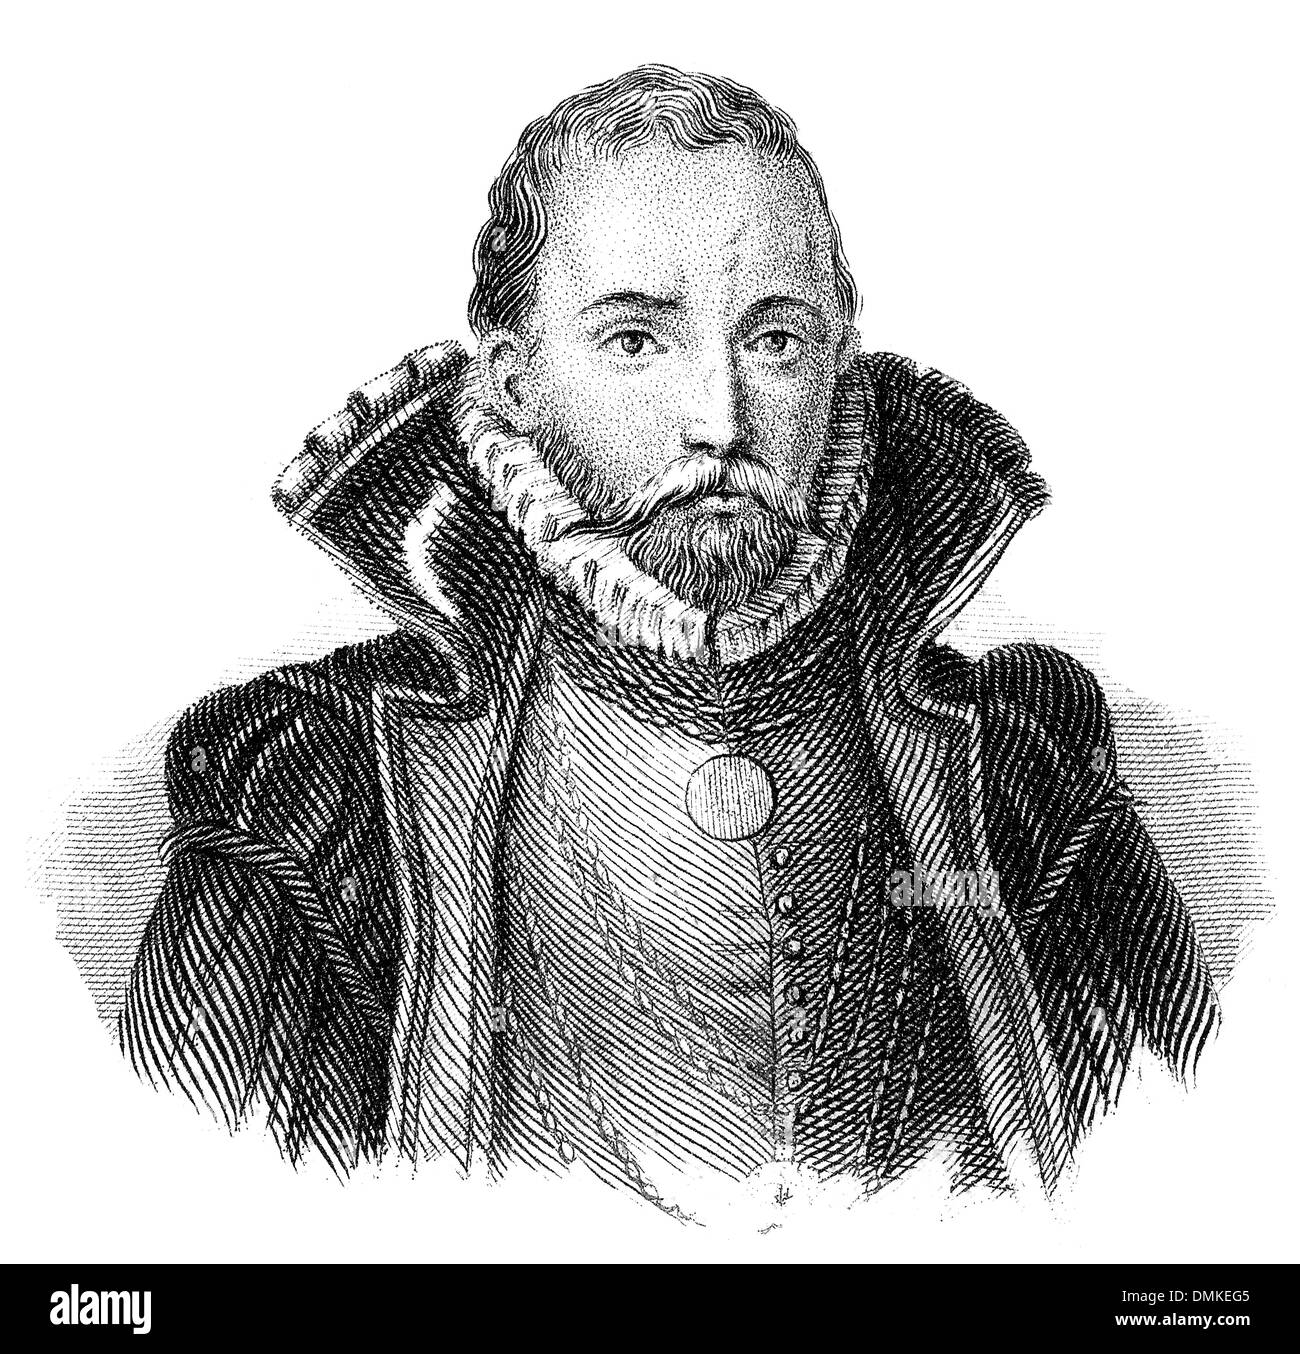 De Tycho Brahe, 1546 - 1601, l'astronome danois Tycho Brahé, de, 1546 - 1601, ein dänischer astronome extraterrestre Banque D'Images